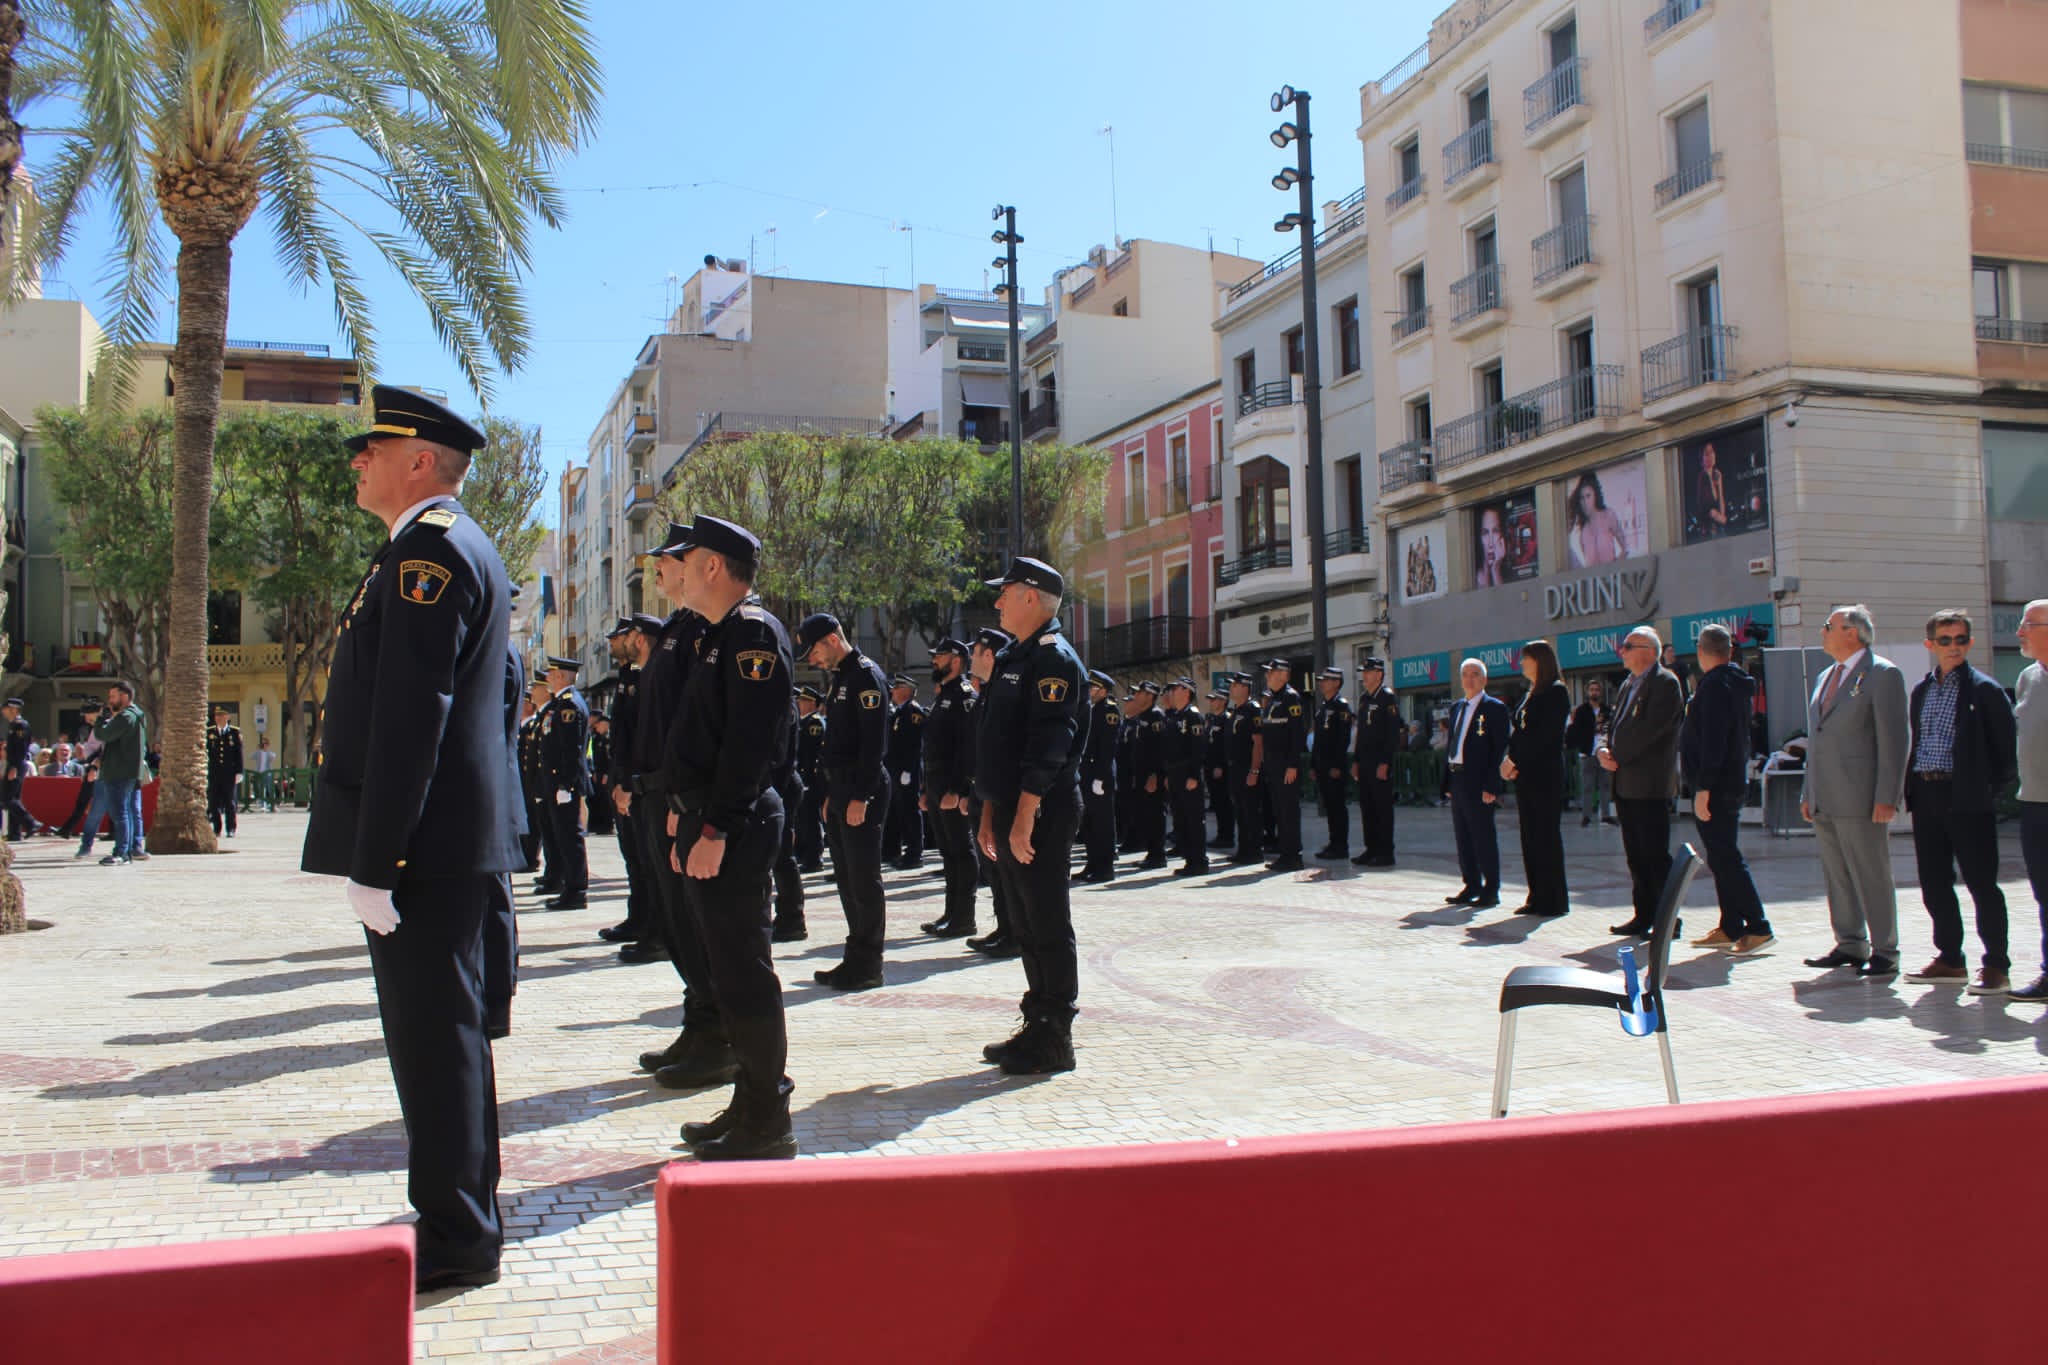 16 oficiales y agentes de la Policía Local de l’Alfàs condecorados por la Generalitat